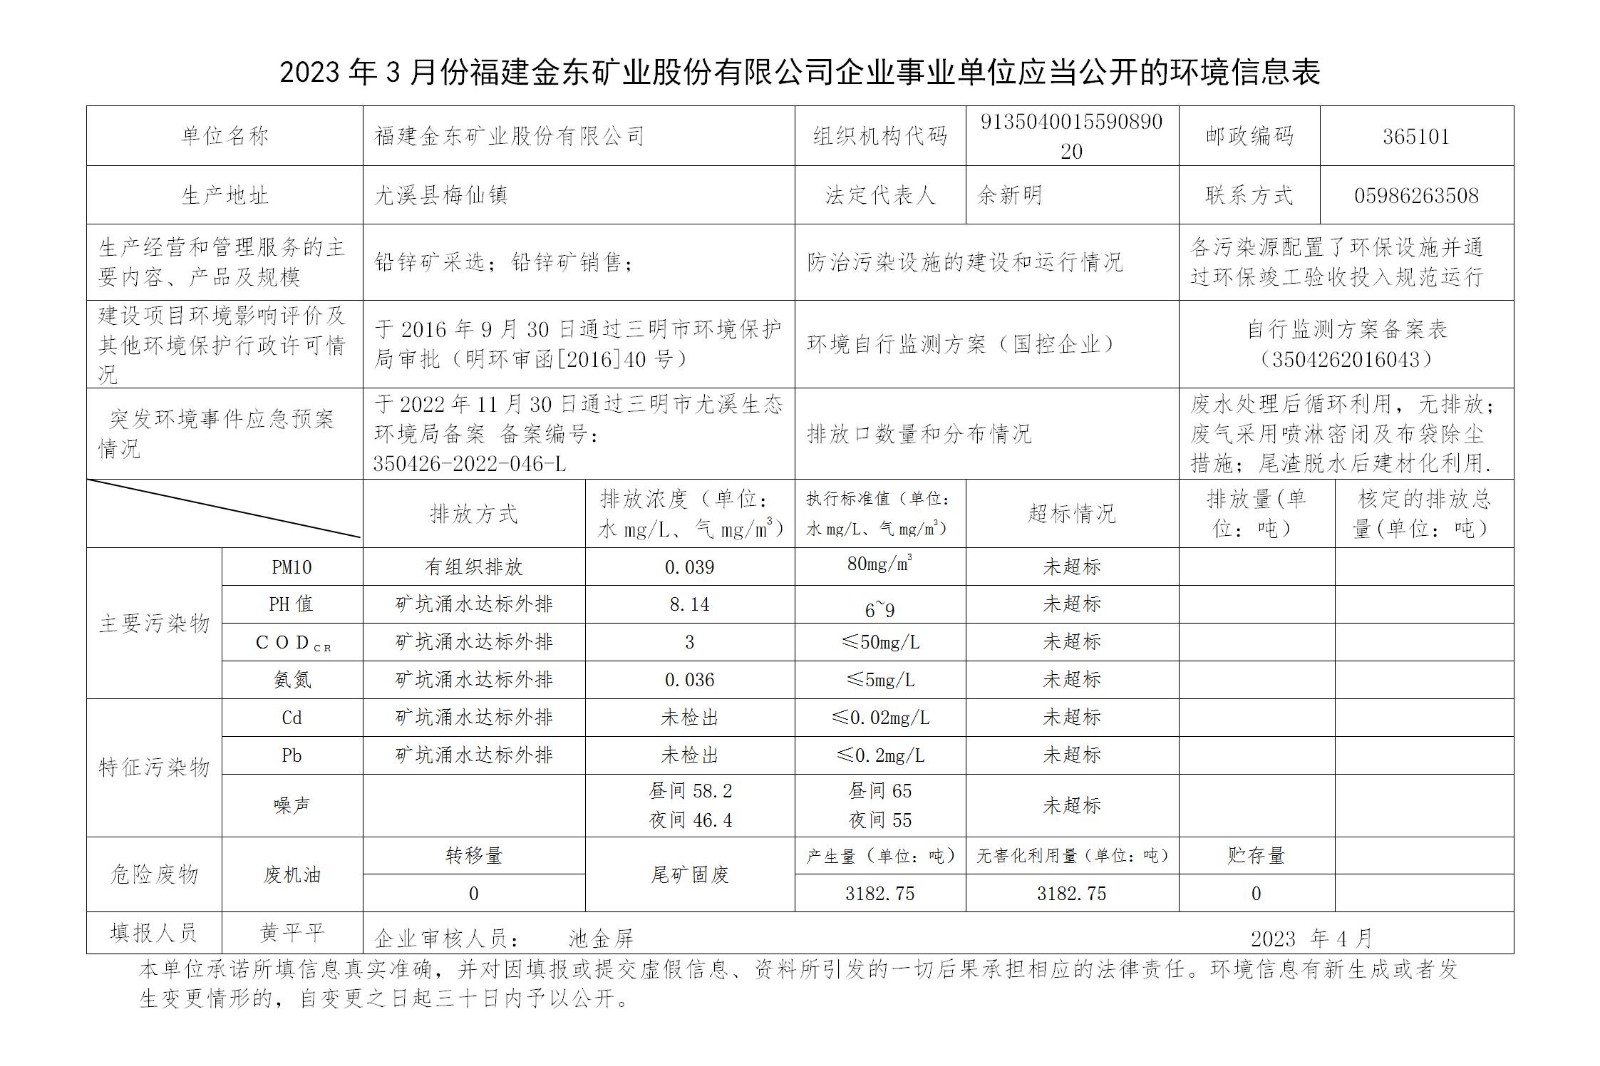 2023年3月份koko体育官方网站企业事业单位应当公开的环境信息表_01.jpg